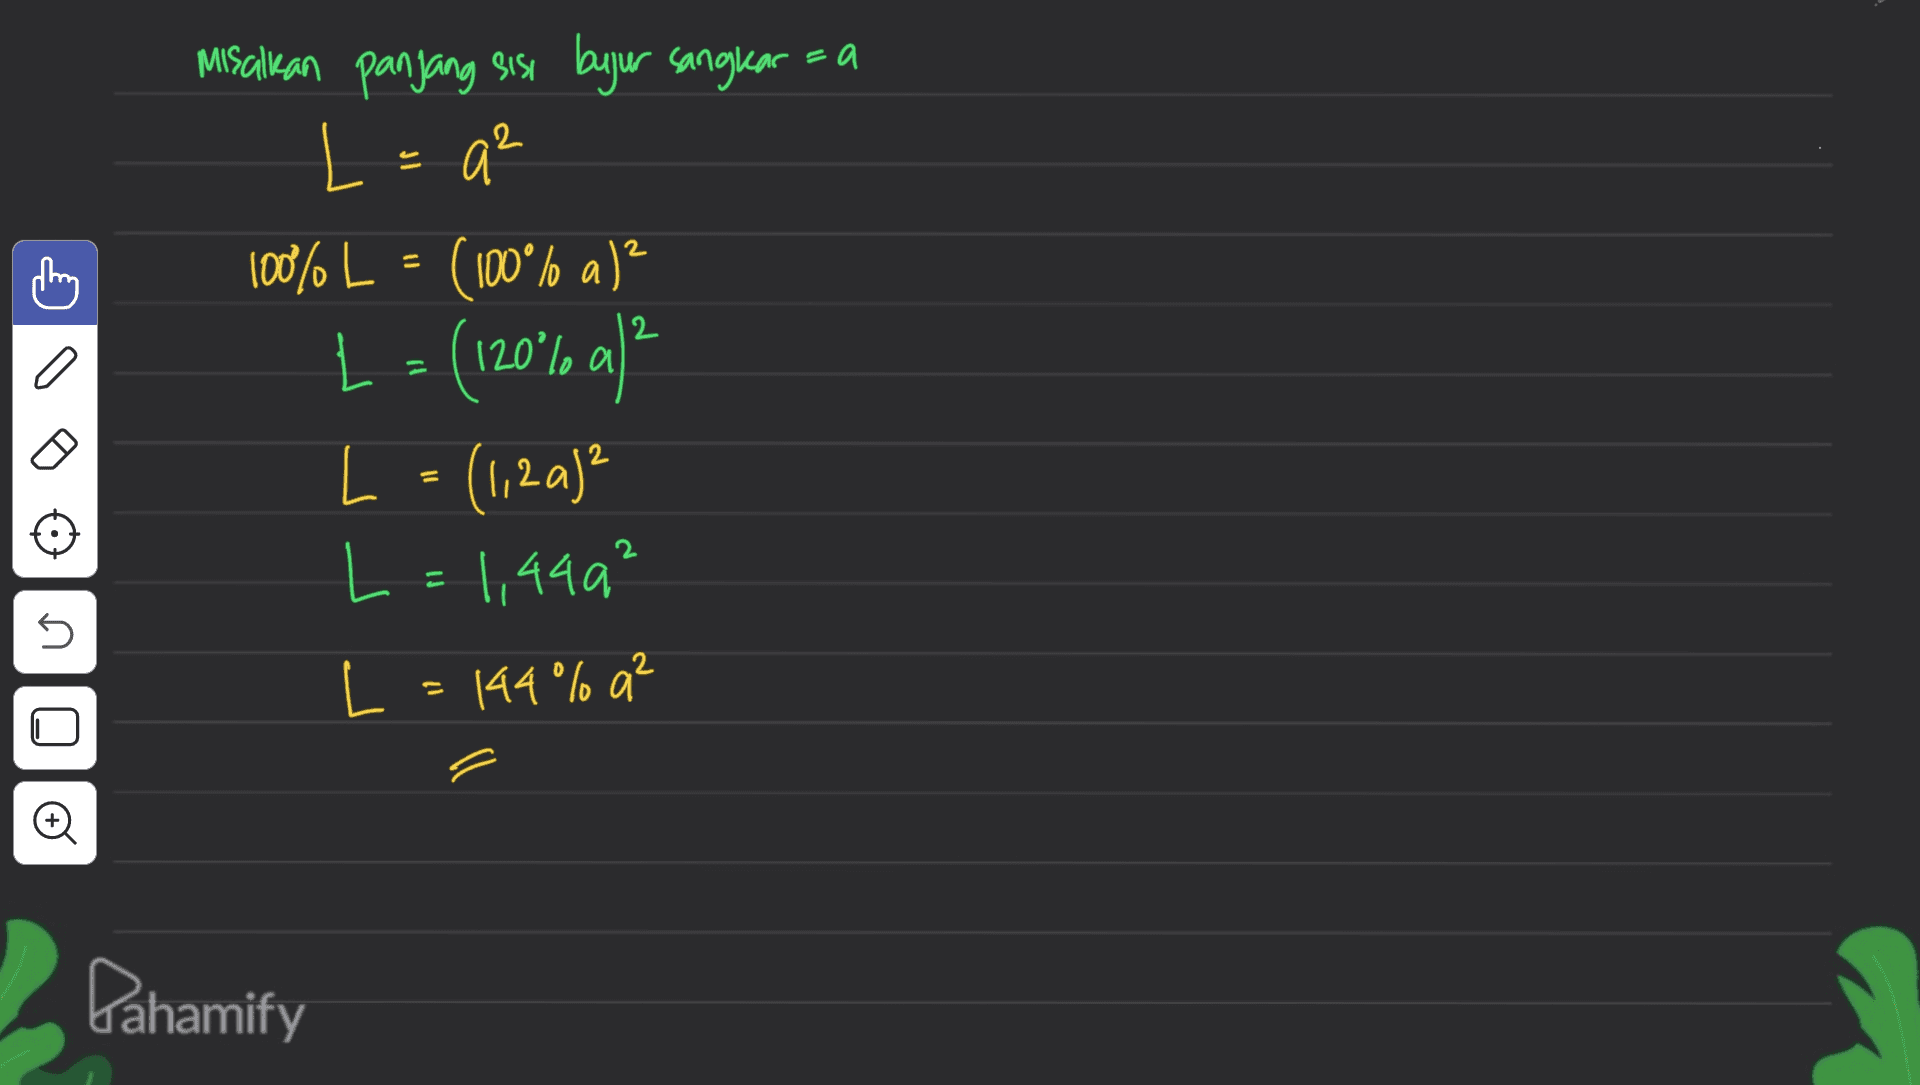 Misalkan panjang sisi bujur sangkar L = qe 100% L = (100°% a)? L - (120°/a) L = (1,2a)² L = 1,449² 2 a 5 L = 144% a² Đ Pahamify 